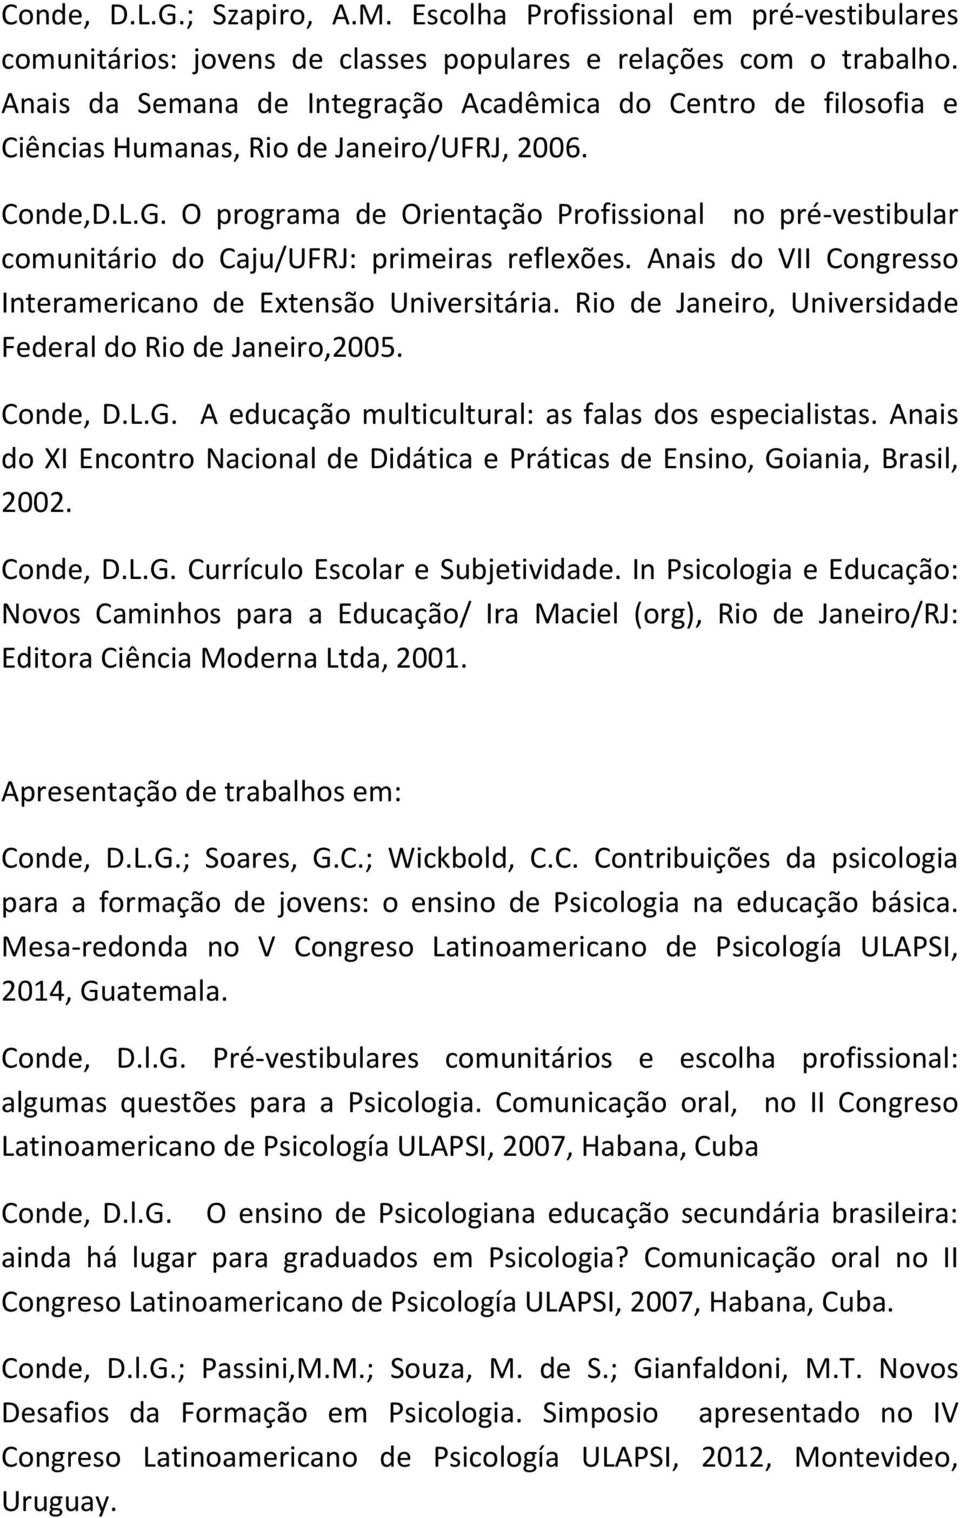 O programa de Orientação Profissional no pré vestibular comunitário do Caju/UFRJ: primeiras reflexões. Anais do VII Congresso Interamericano de Extensão Universitária.